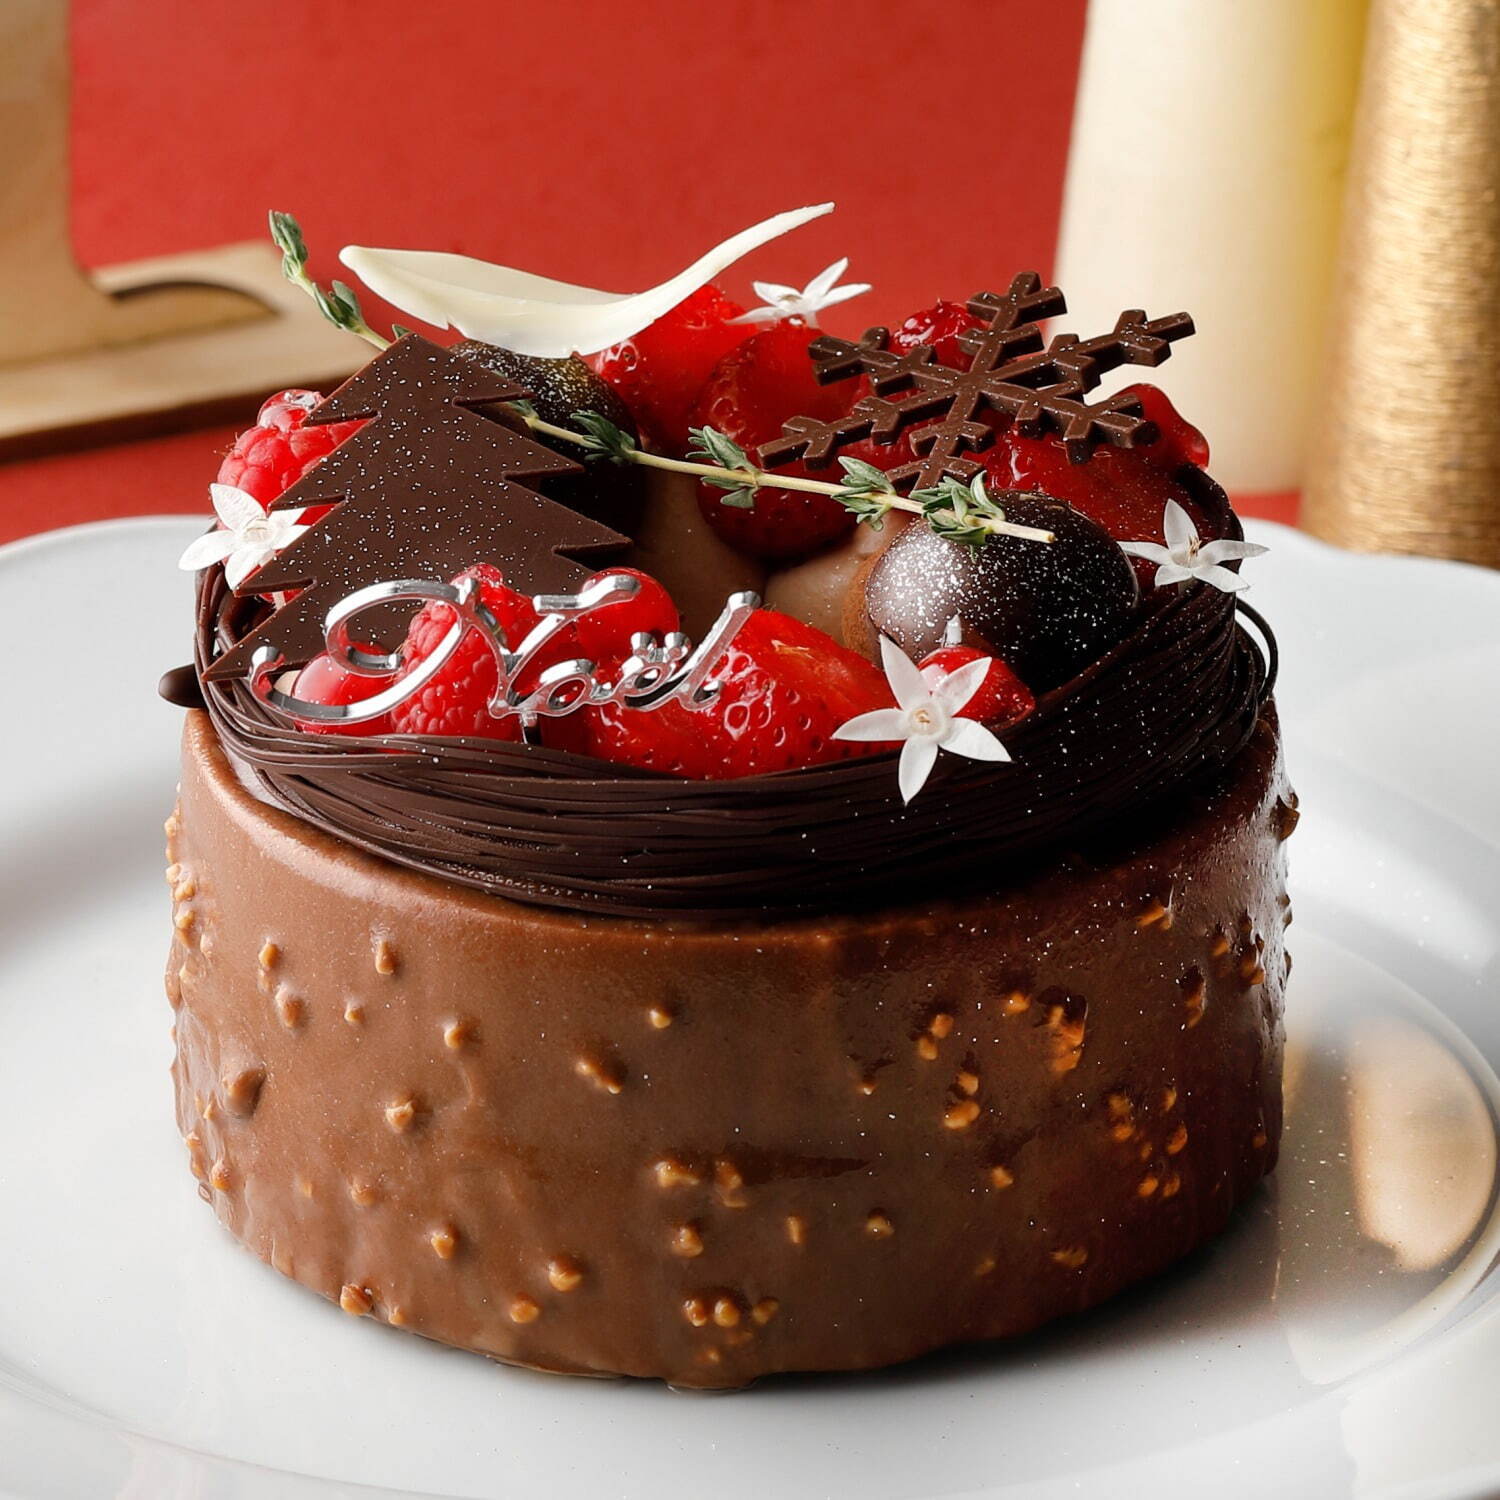 チョコレート専門店 バニラビーンズ クリスマスケーキ みなとみらいの夜 イメージの9層チョコケーキ ファッションプレス